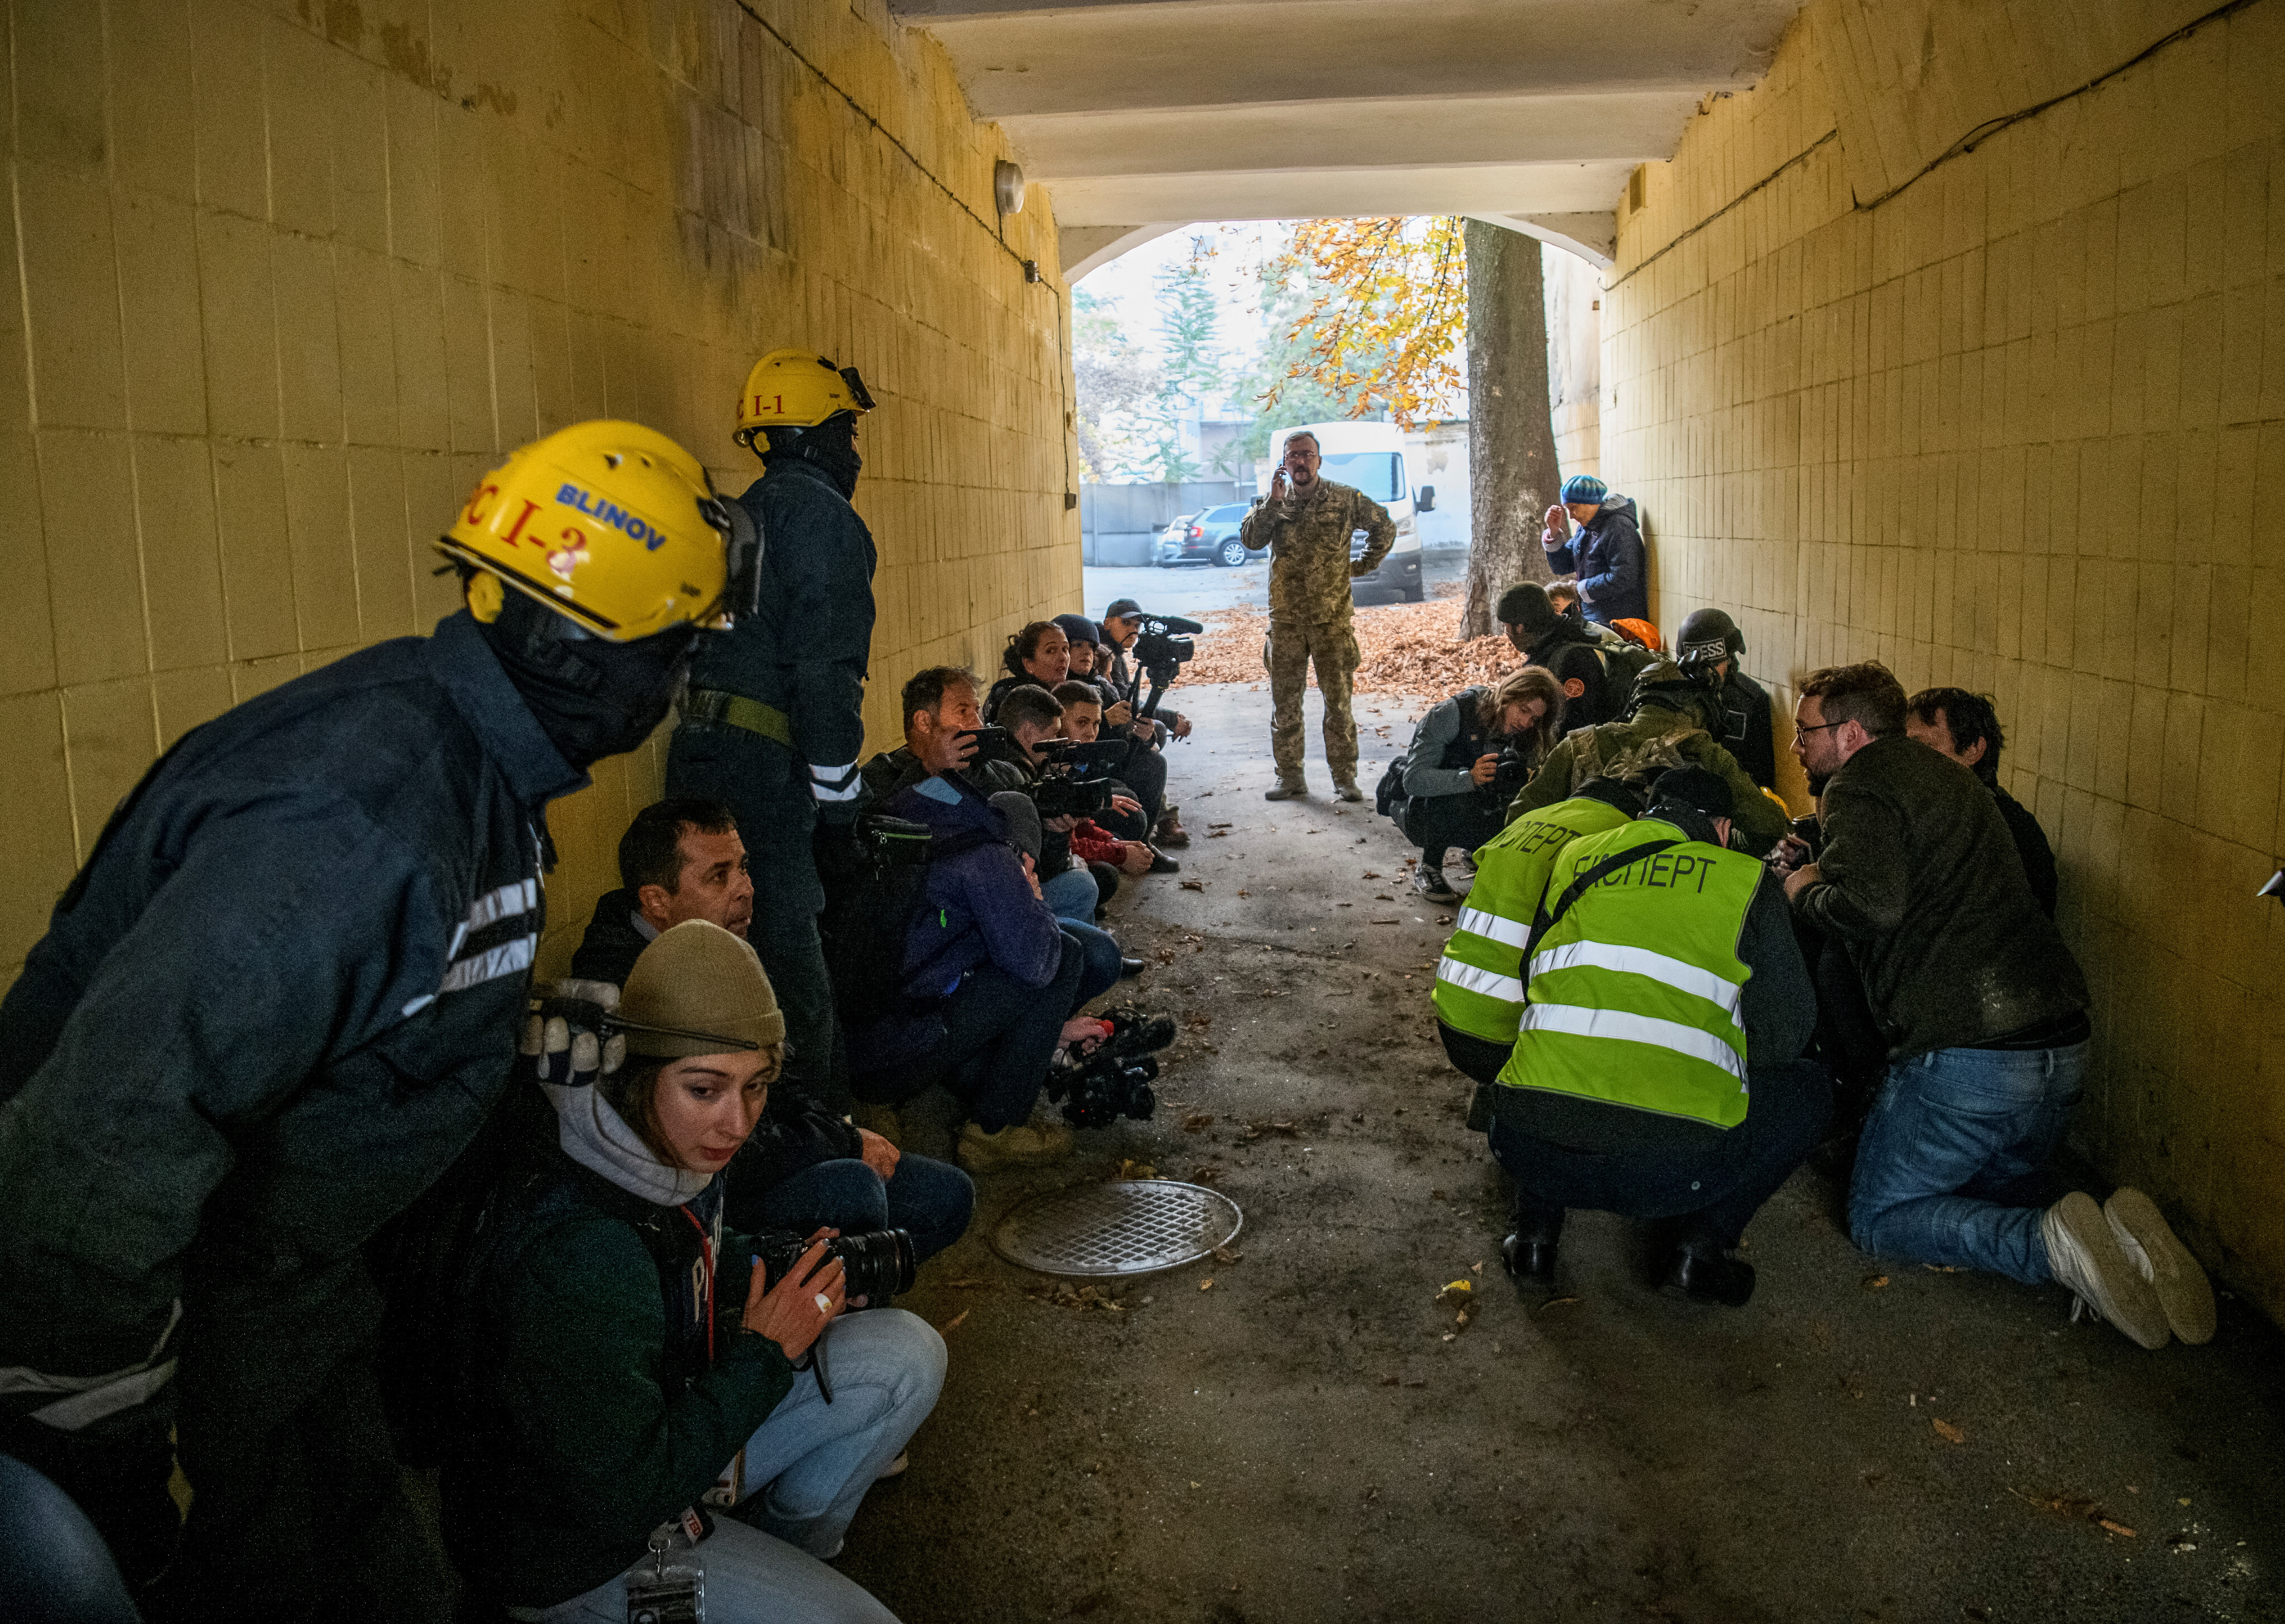 Las personas rescatadas, los periodistas y los policías se refugian cuando suena una sirena de ataque aéreo (EUTERS/Vladyslav Musiienko)